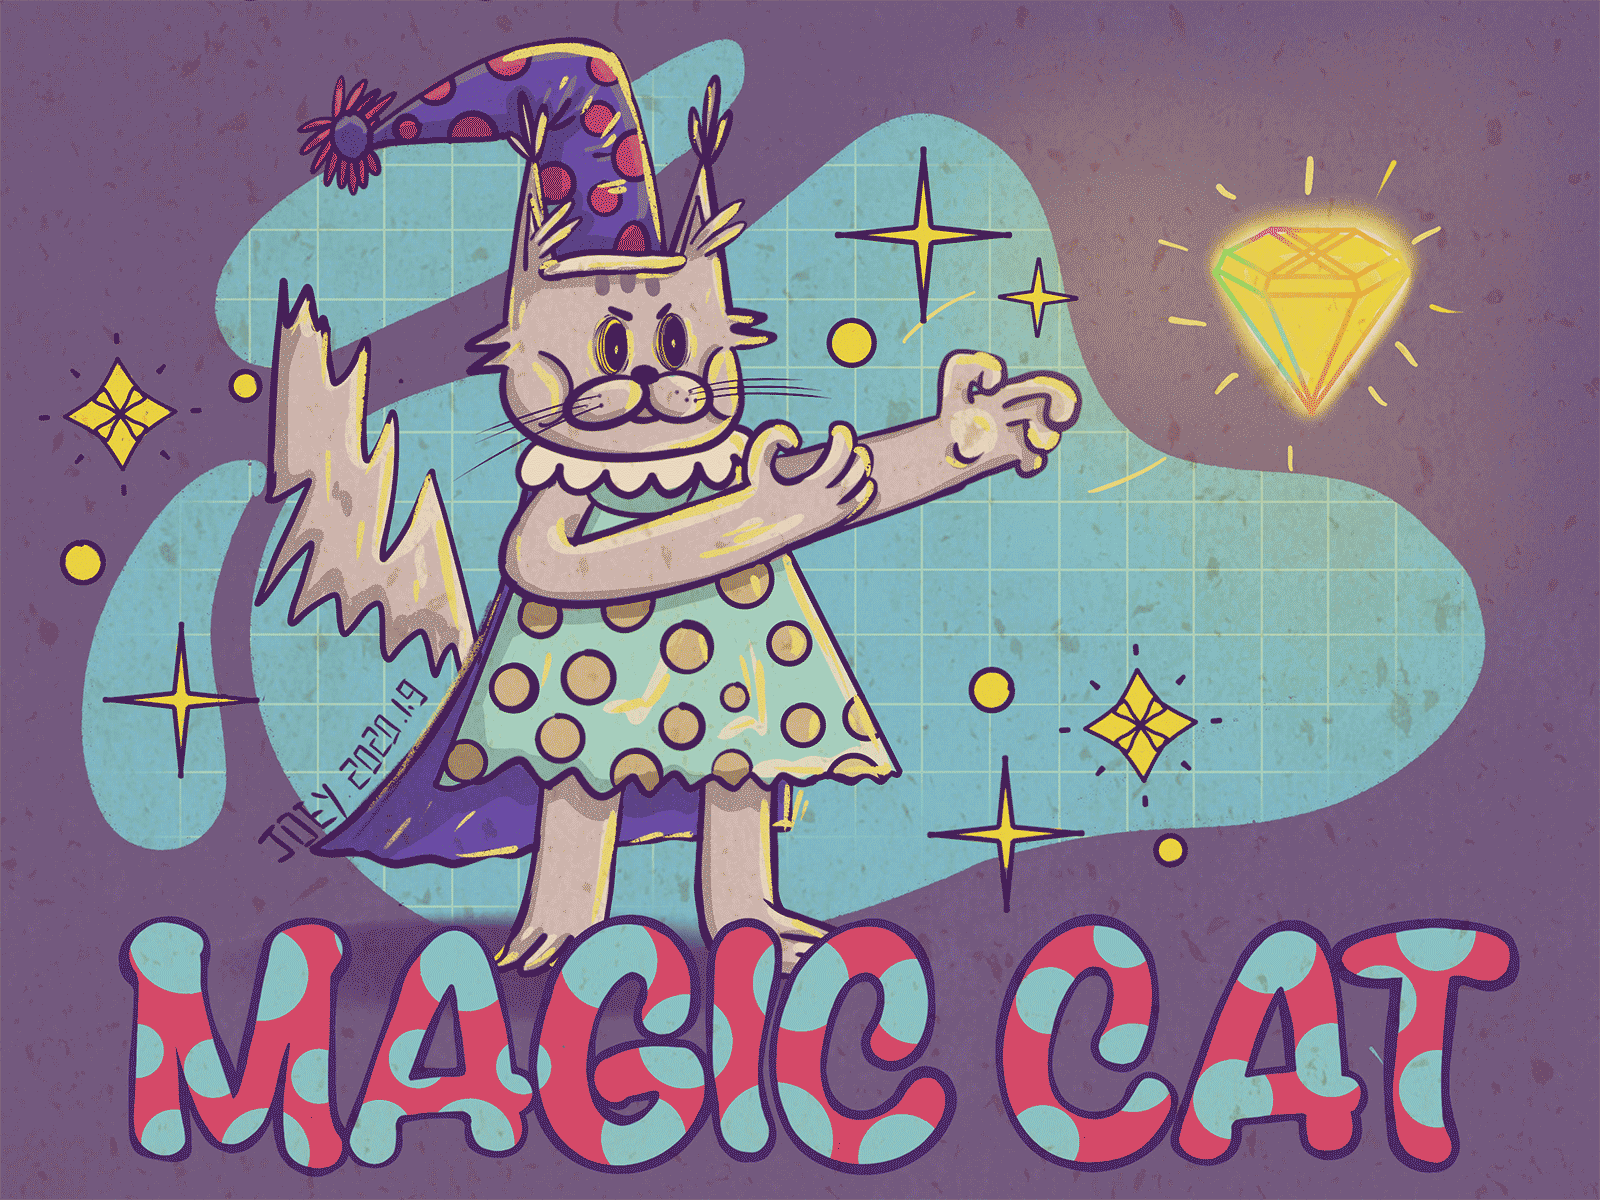 magic cat